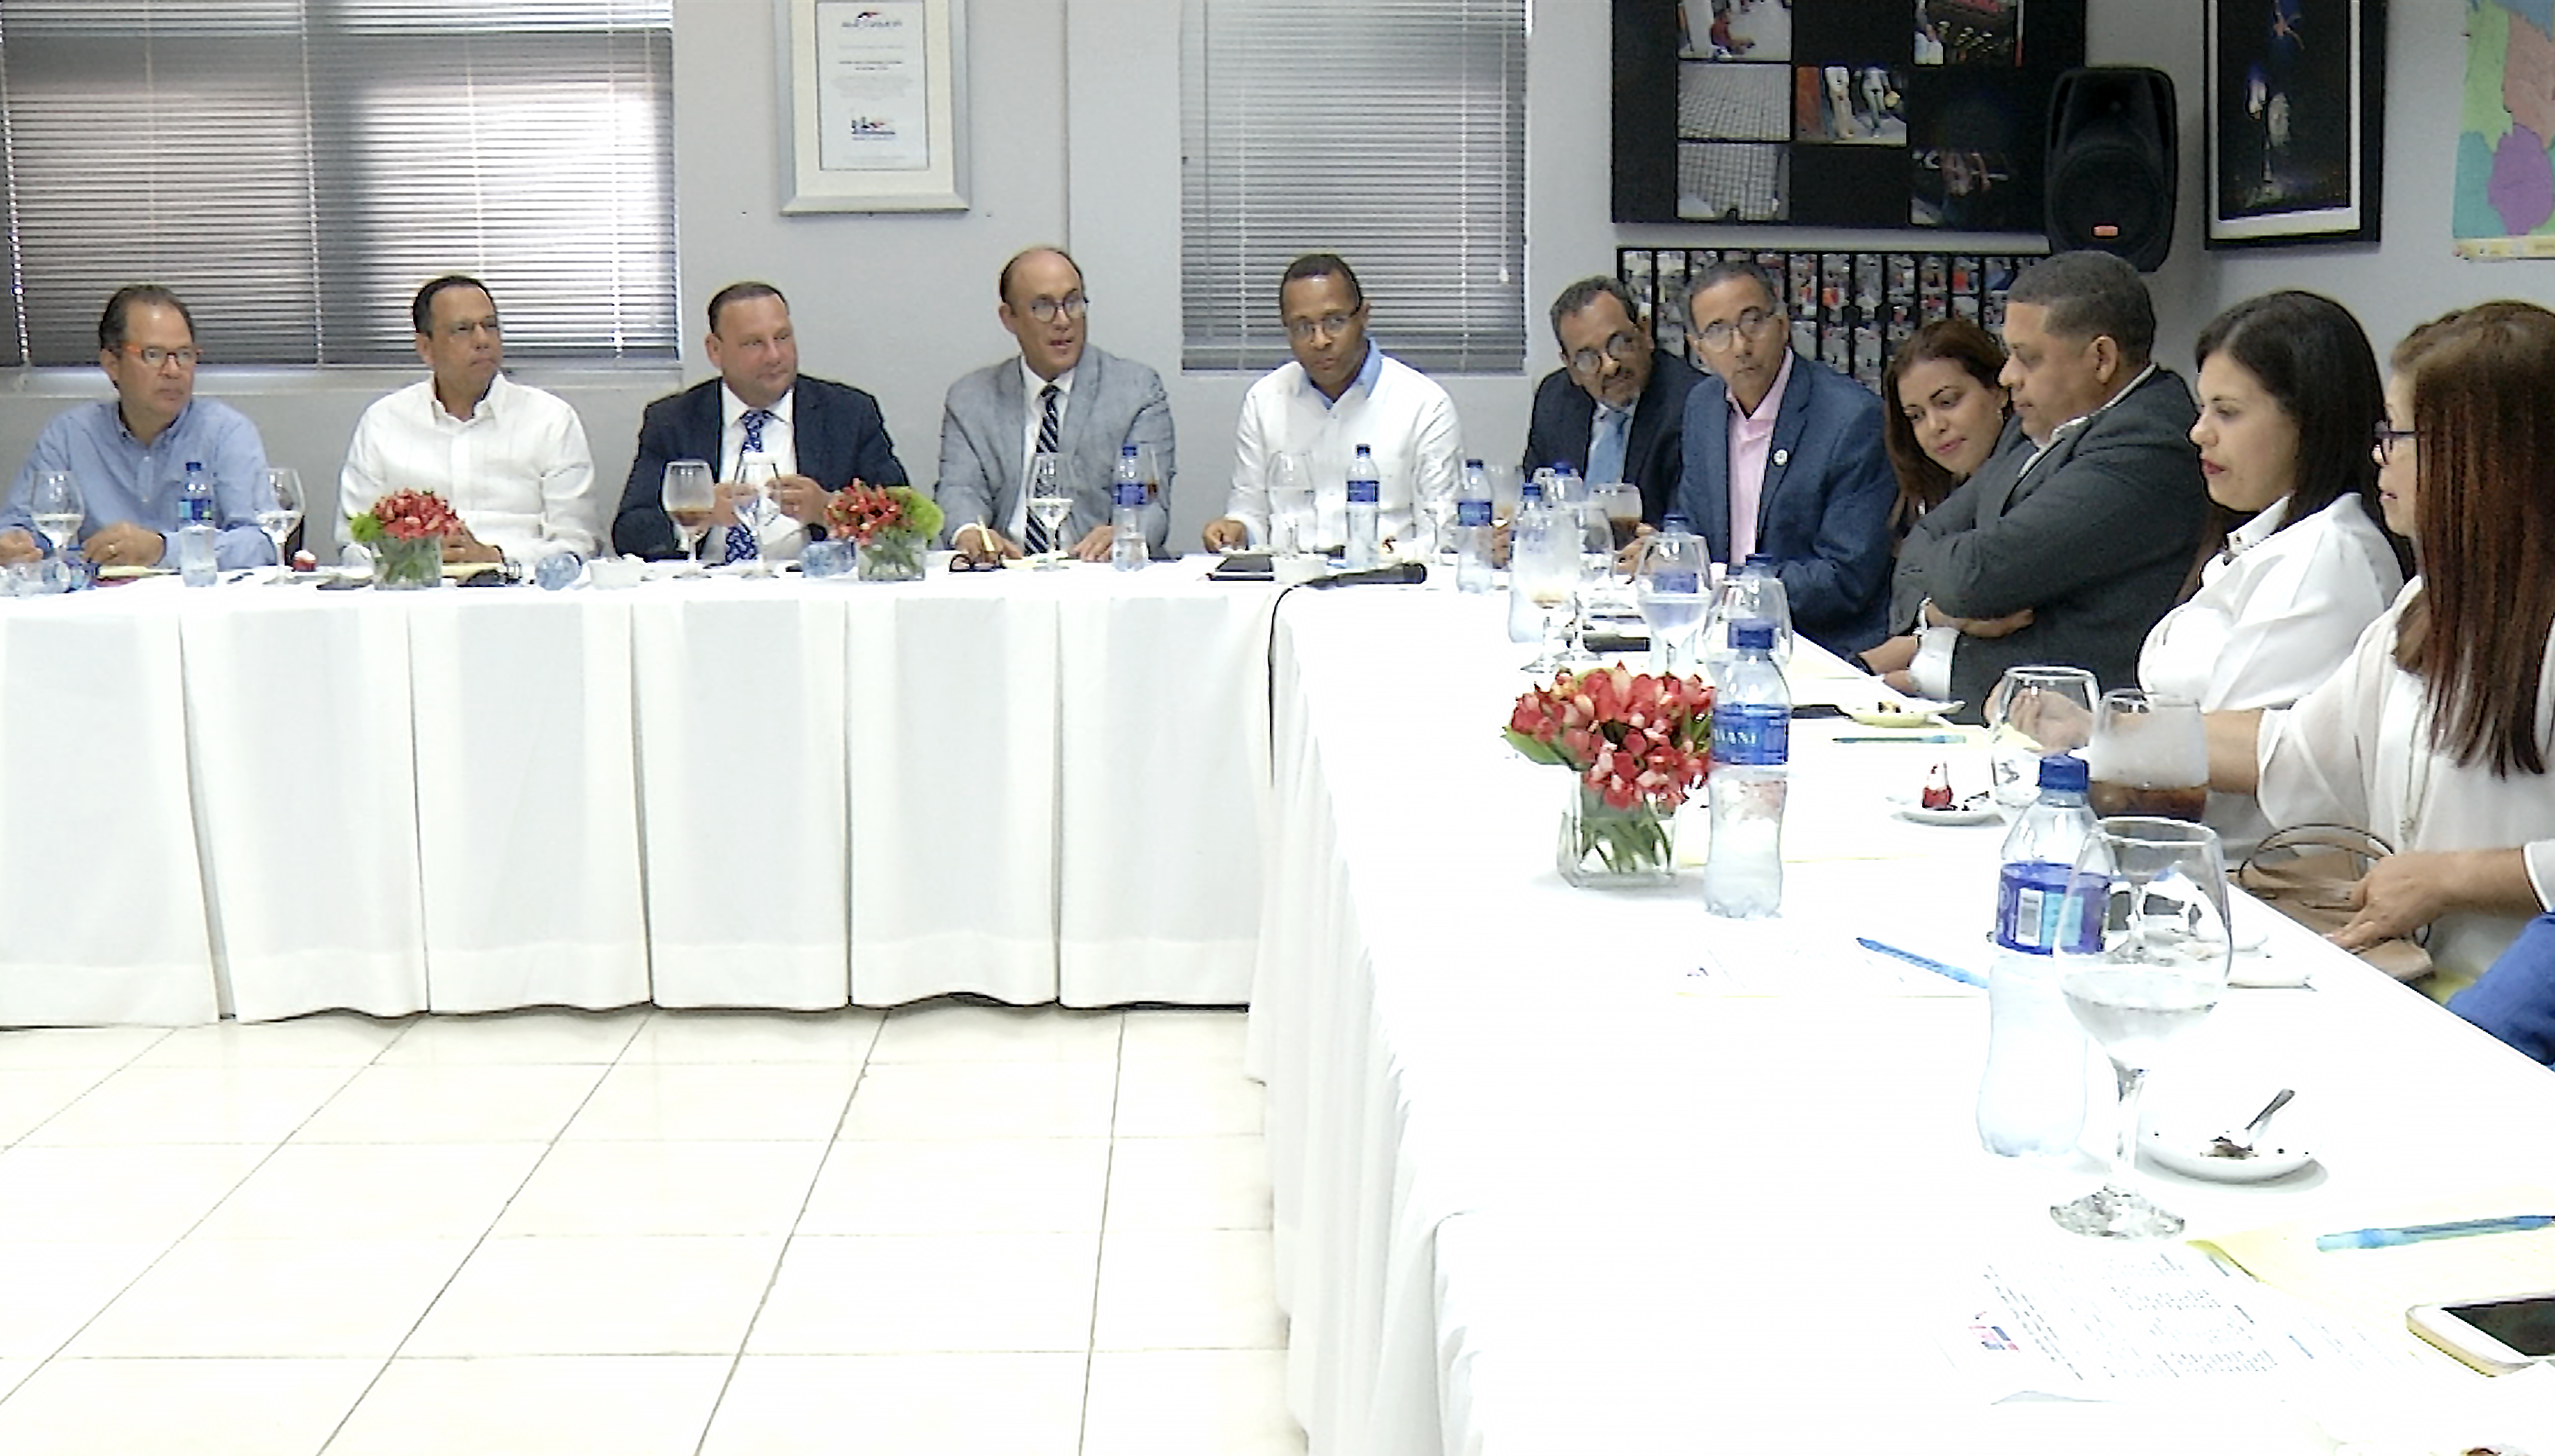  imagen Ministro sentado durante encuentro-almuerzo con los directivos y otras personalidades invitadas del Consejo para el Desarrollo Estratégico de la Ciudad y el Municipio de Santiago. 